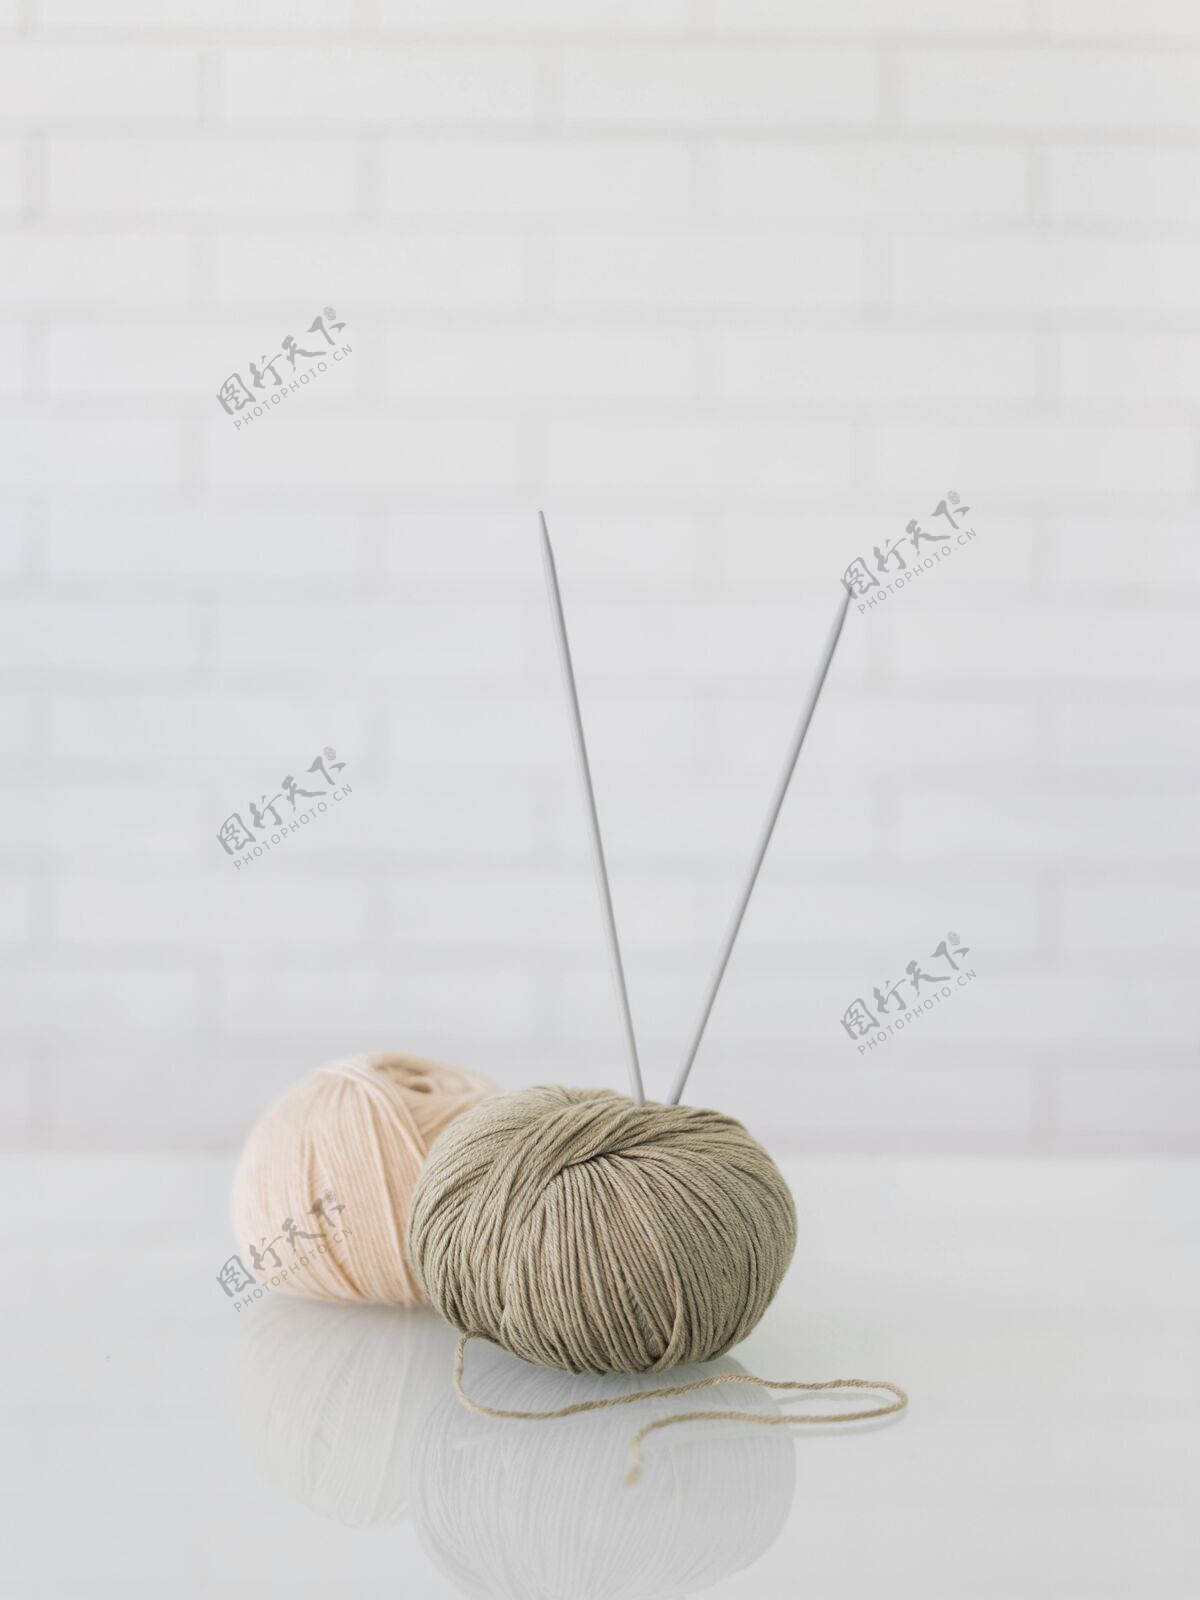 羊毛特写羊毛线编织纱线针织针针织